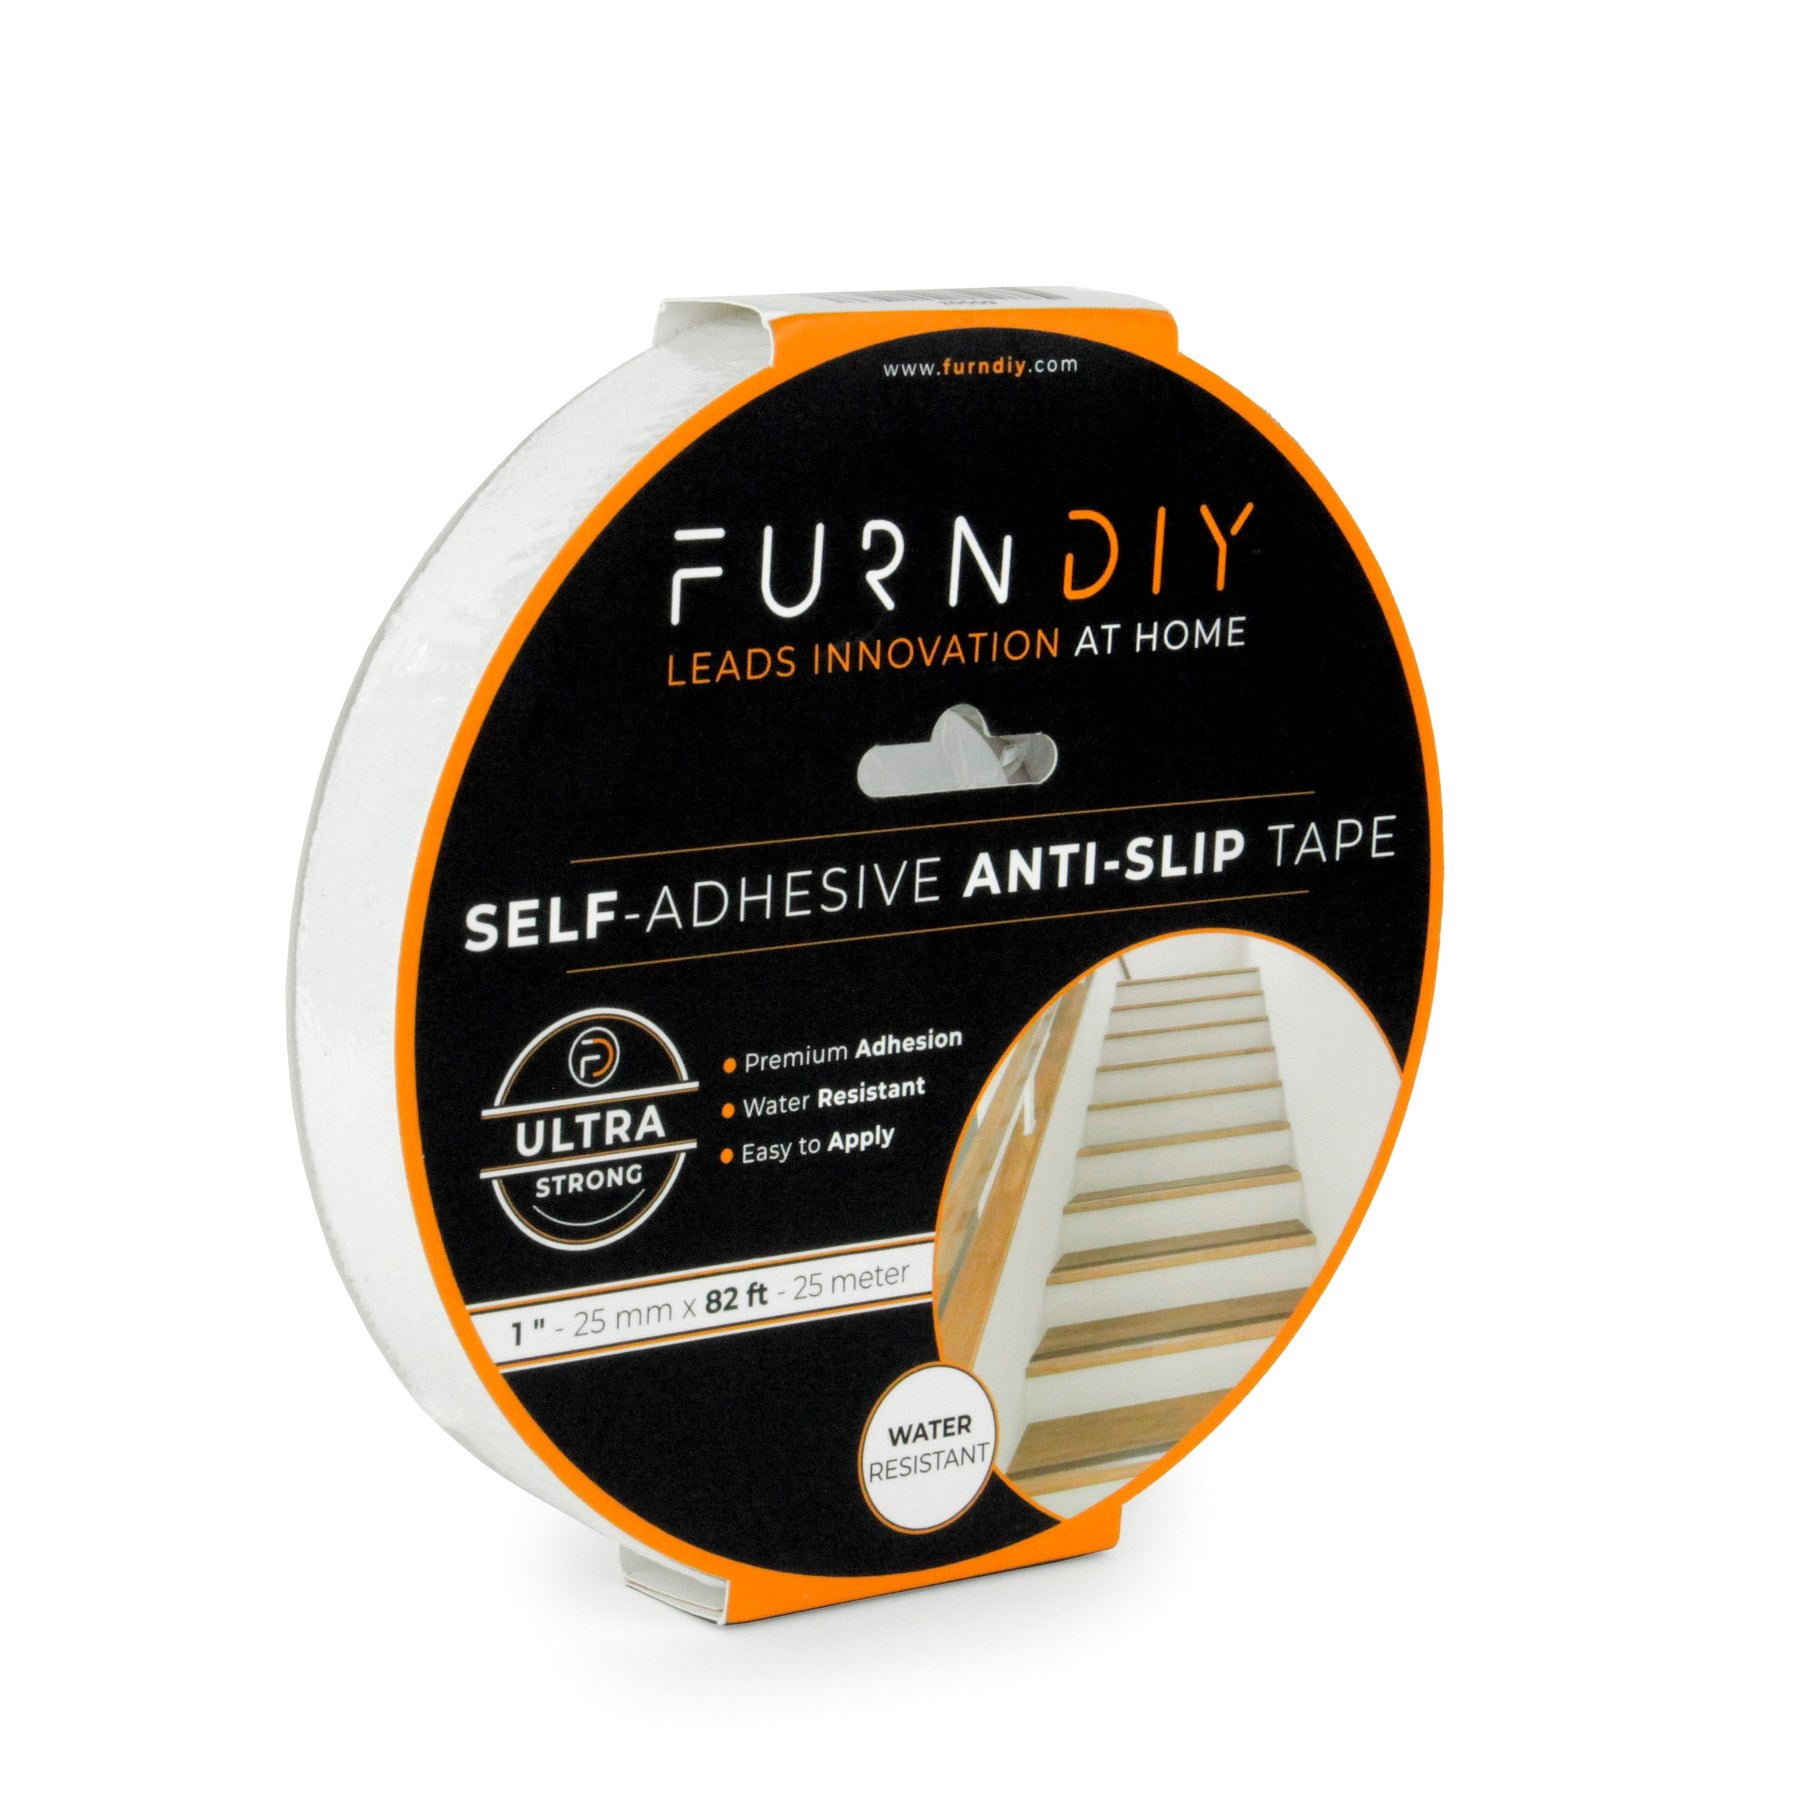 Furndiy Anti Slip Tape, Grip Tape for Stairs, Bathroom, Ladders, Pool, Carpet